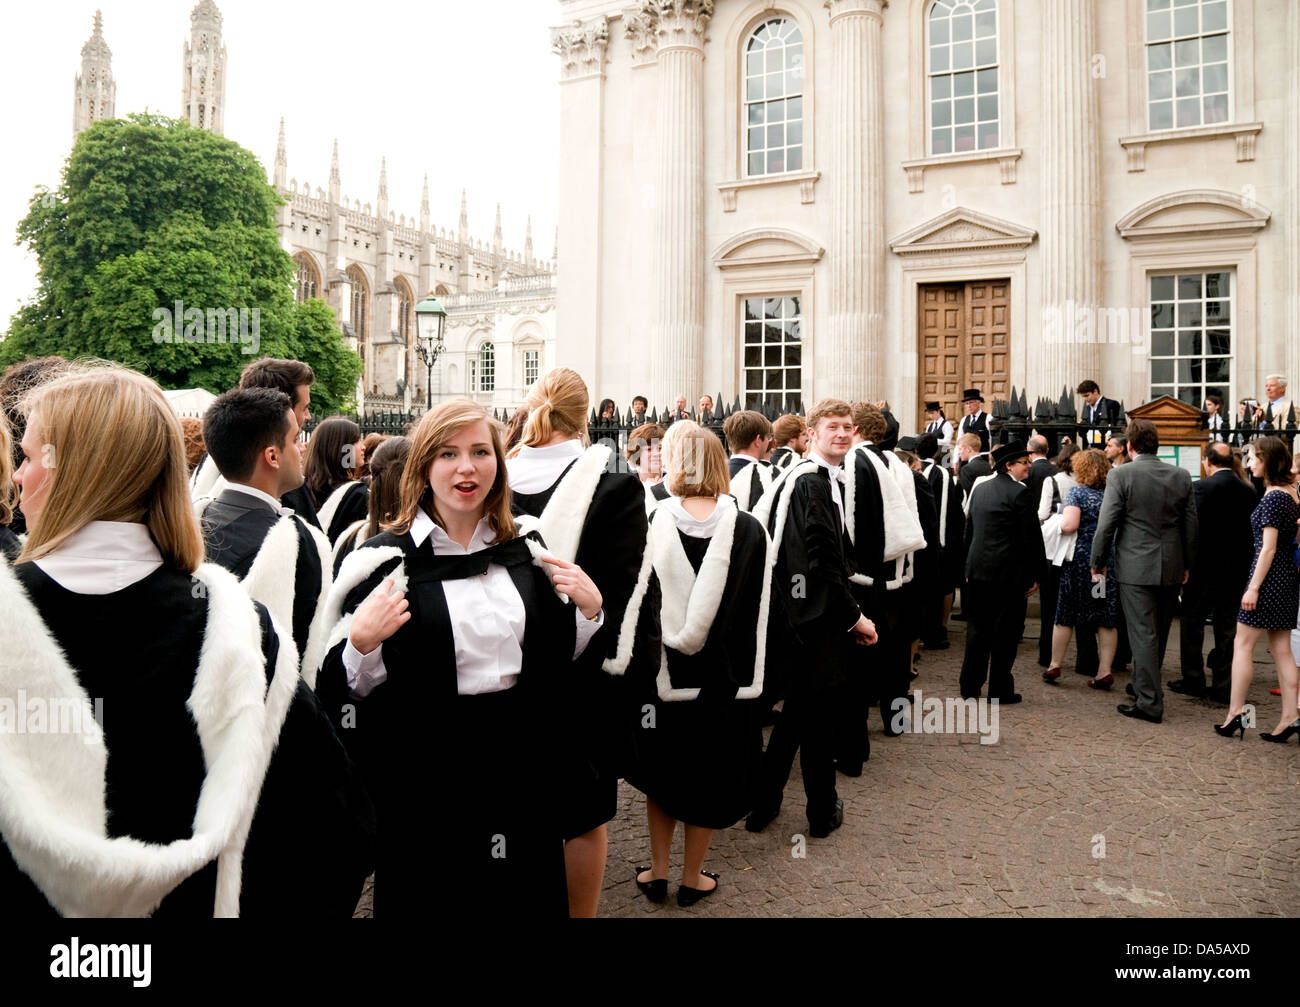 University Education UK; Cambridge University Students Graduation Day. Diplômés en robes de chambre qui obtiennent leur diplôme au Sénat de Cambridge, au Royaume-Uni Banque D'Images